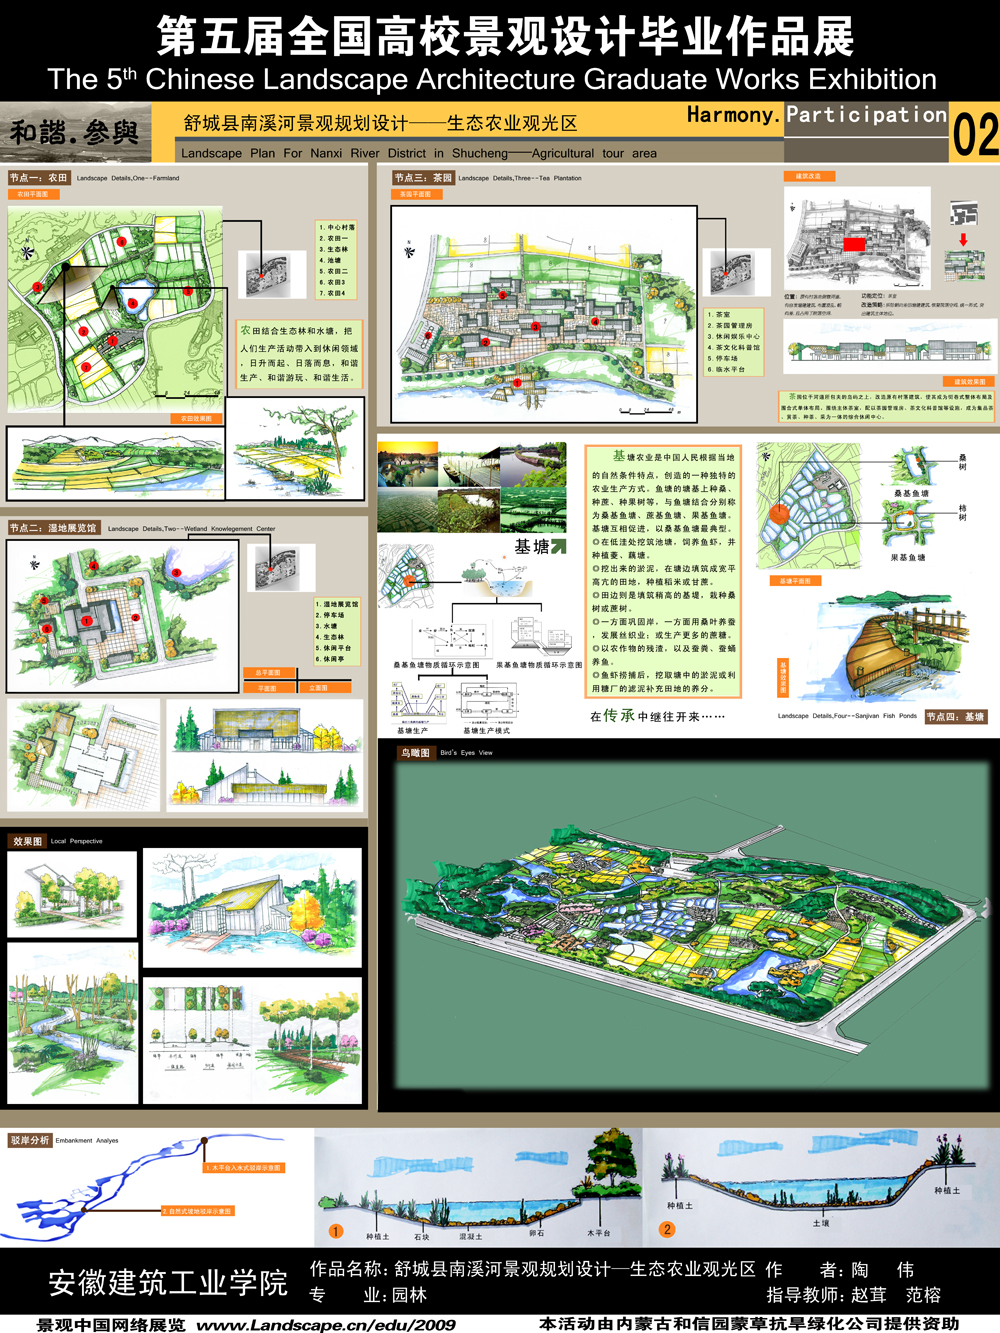 舒城县南溪河景观规划设计——农业观光区-2